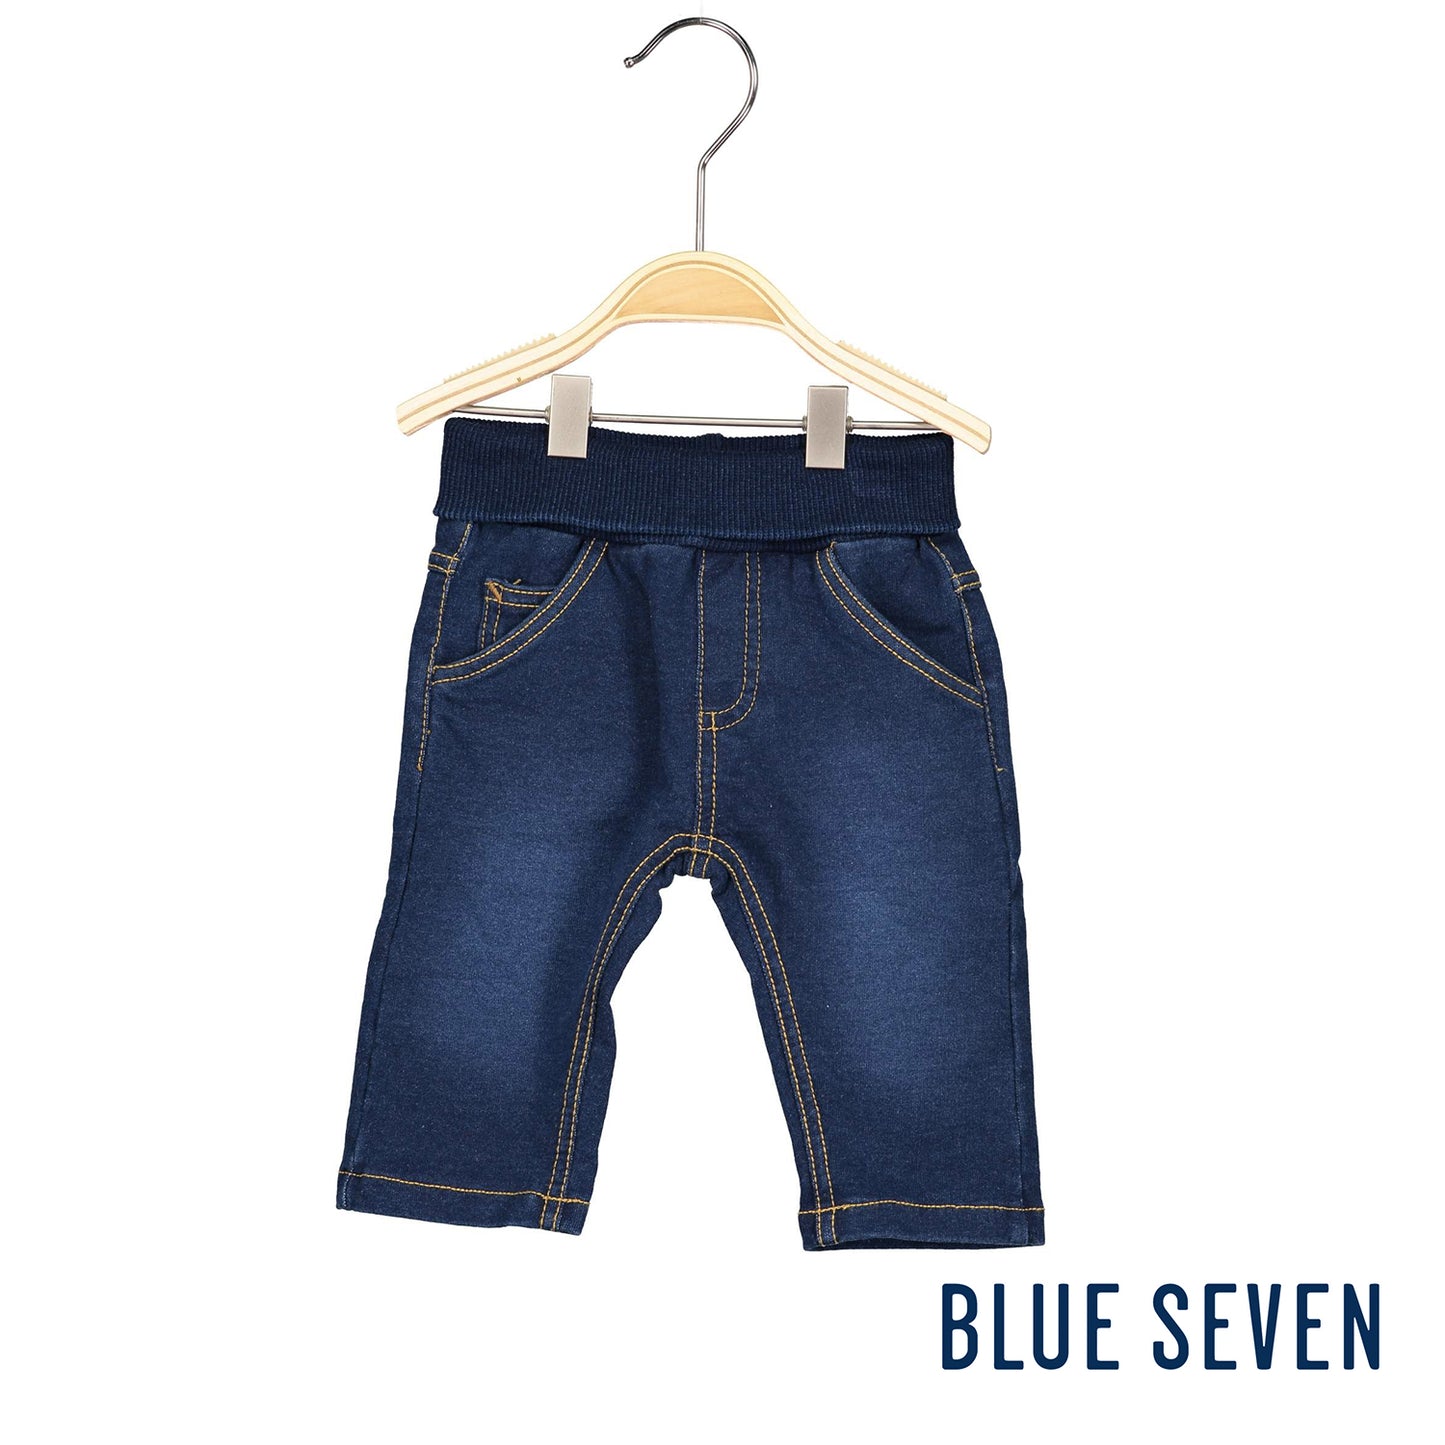 Blue Seven - Jeans Neonato Lungo Blu